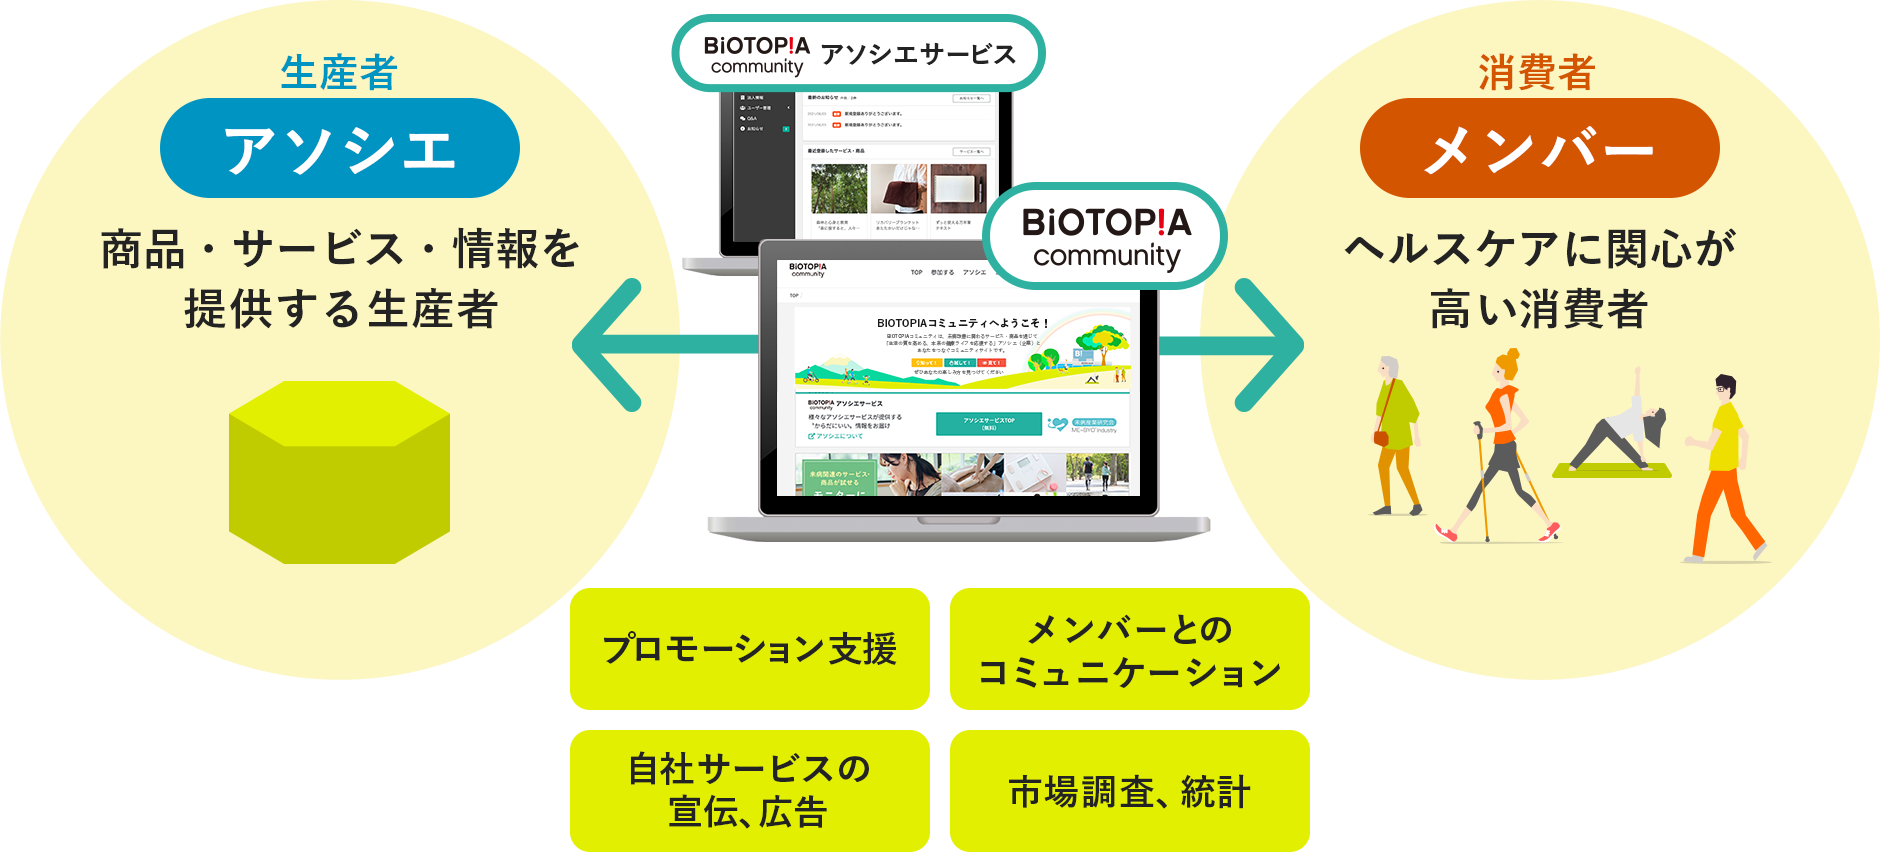 BIOTOPIAコミュニティアソシエサービスは、消費者と生産者間の［プロモーション支援、消費者とのコミュニケーション、自社サービスの宣伝・広告、市場調査・統計］をサポートします